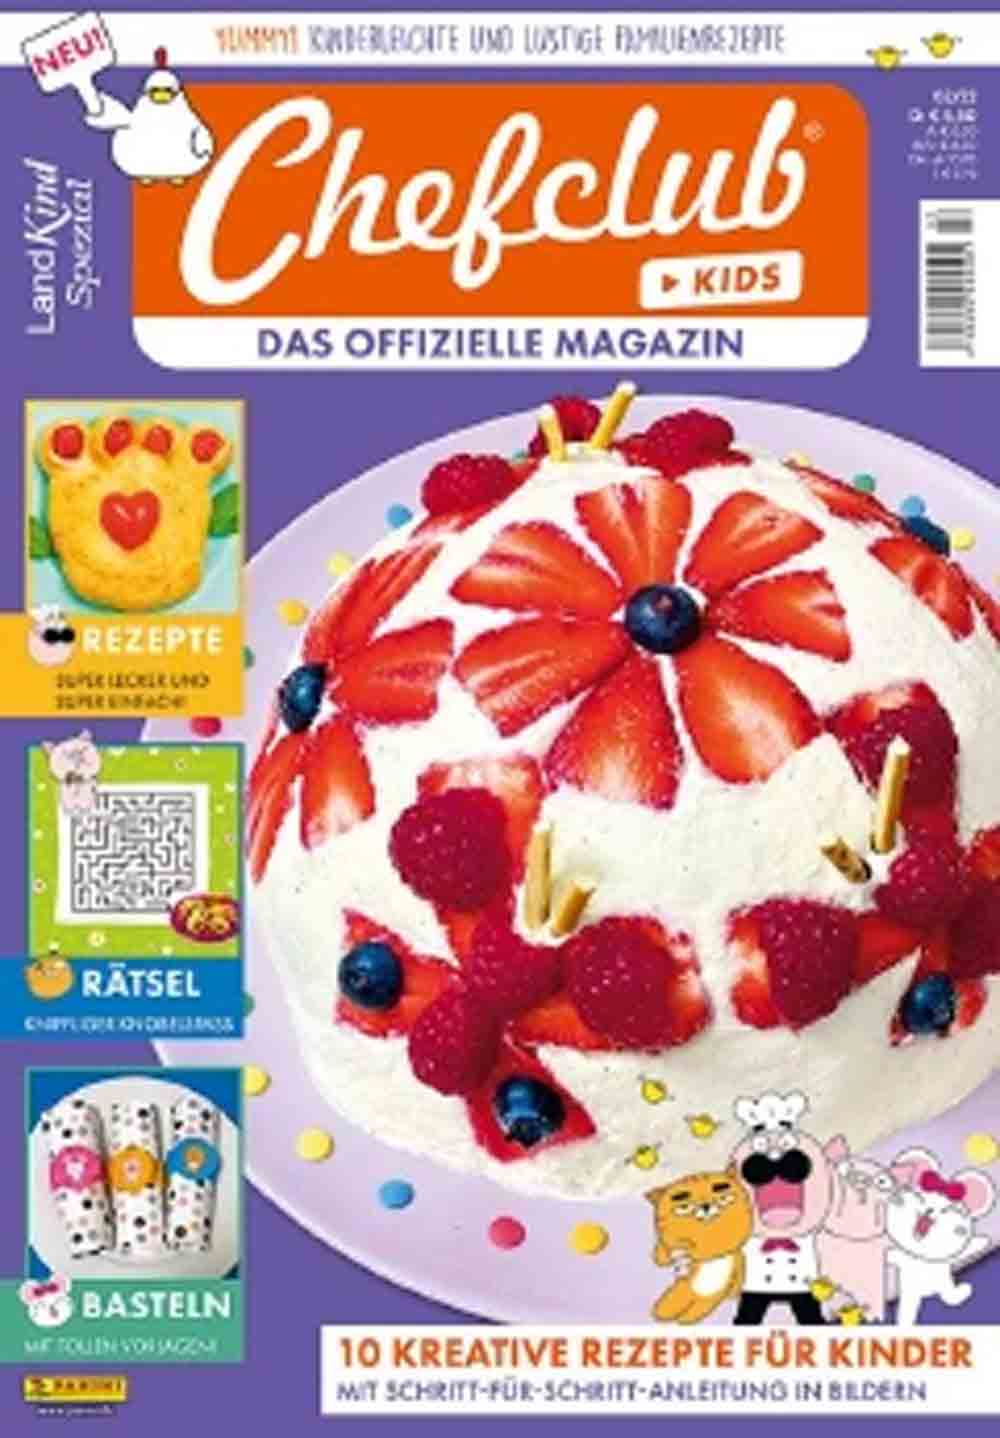 Panini bringt das offizielle Chefclub Kids Magazin als Landkind Spezial heraus